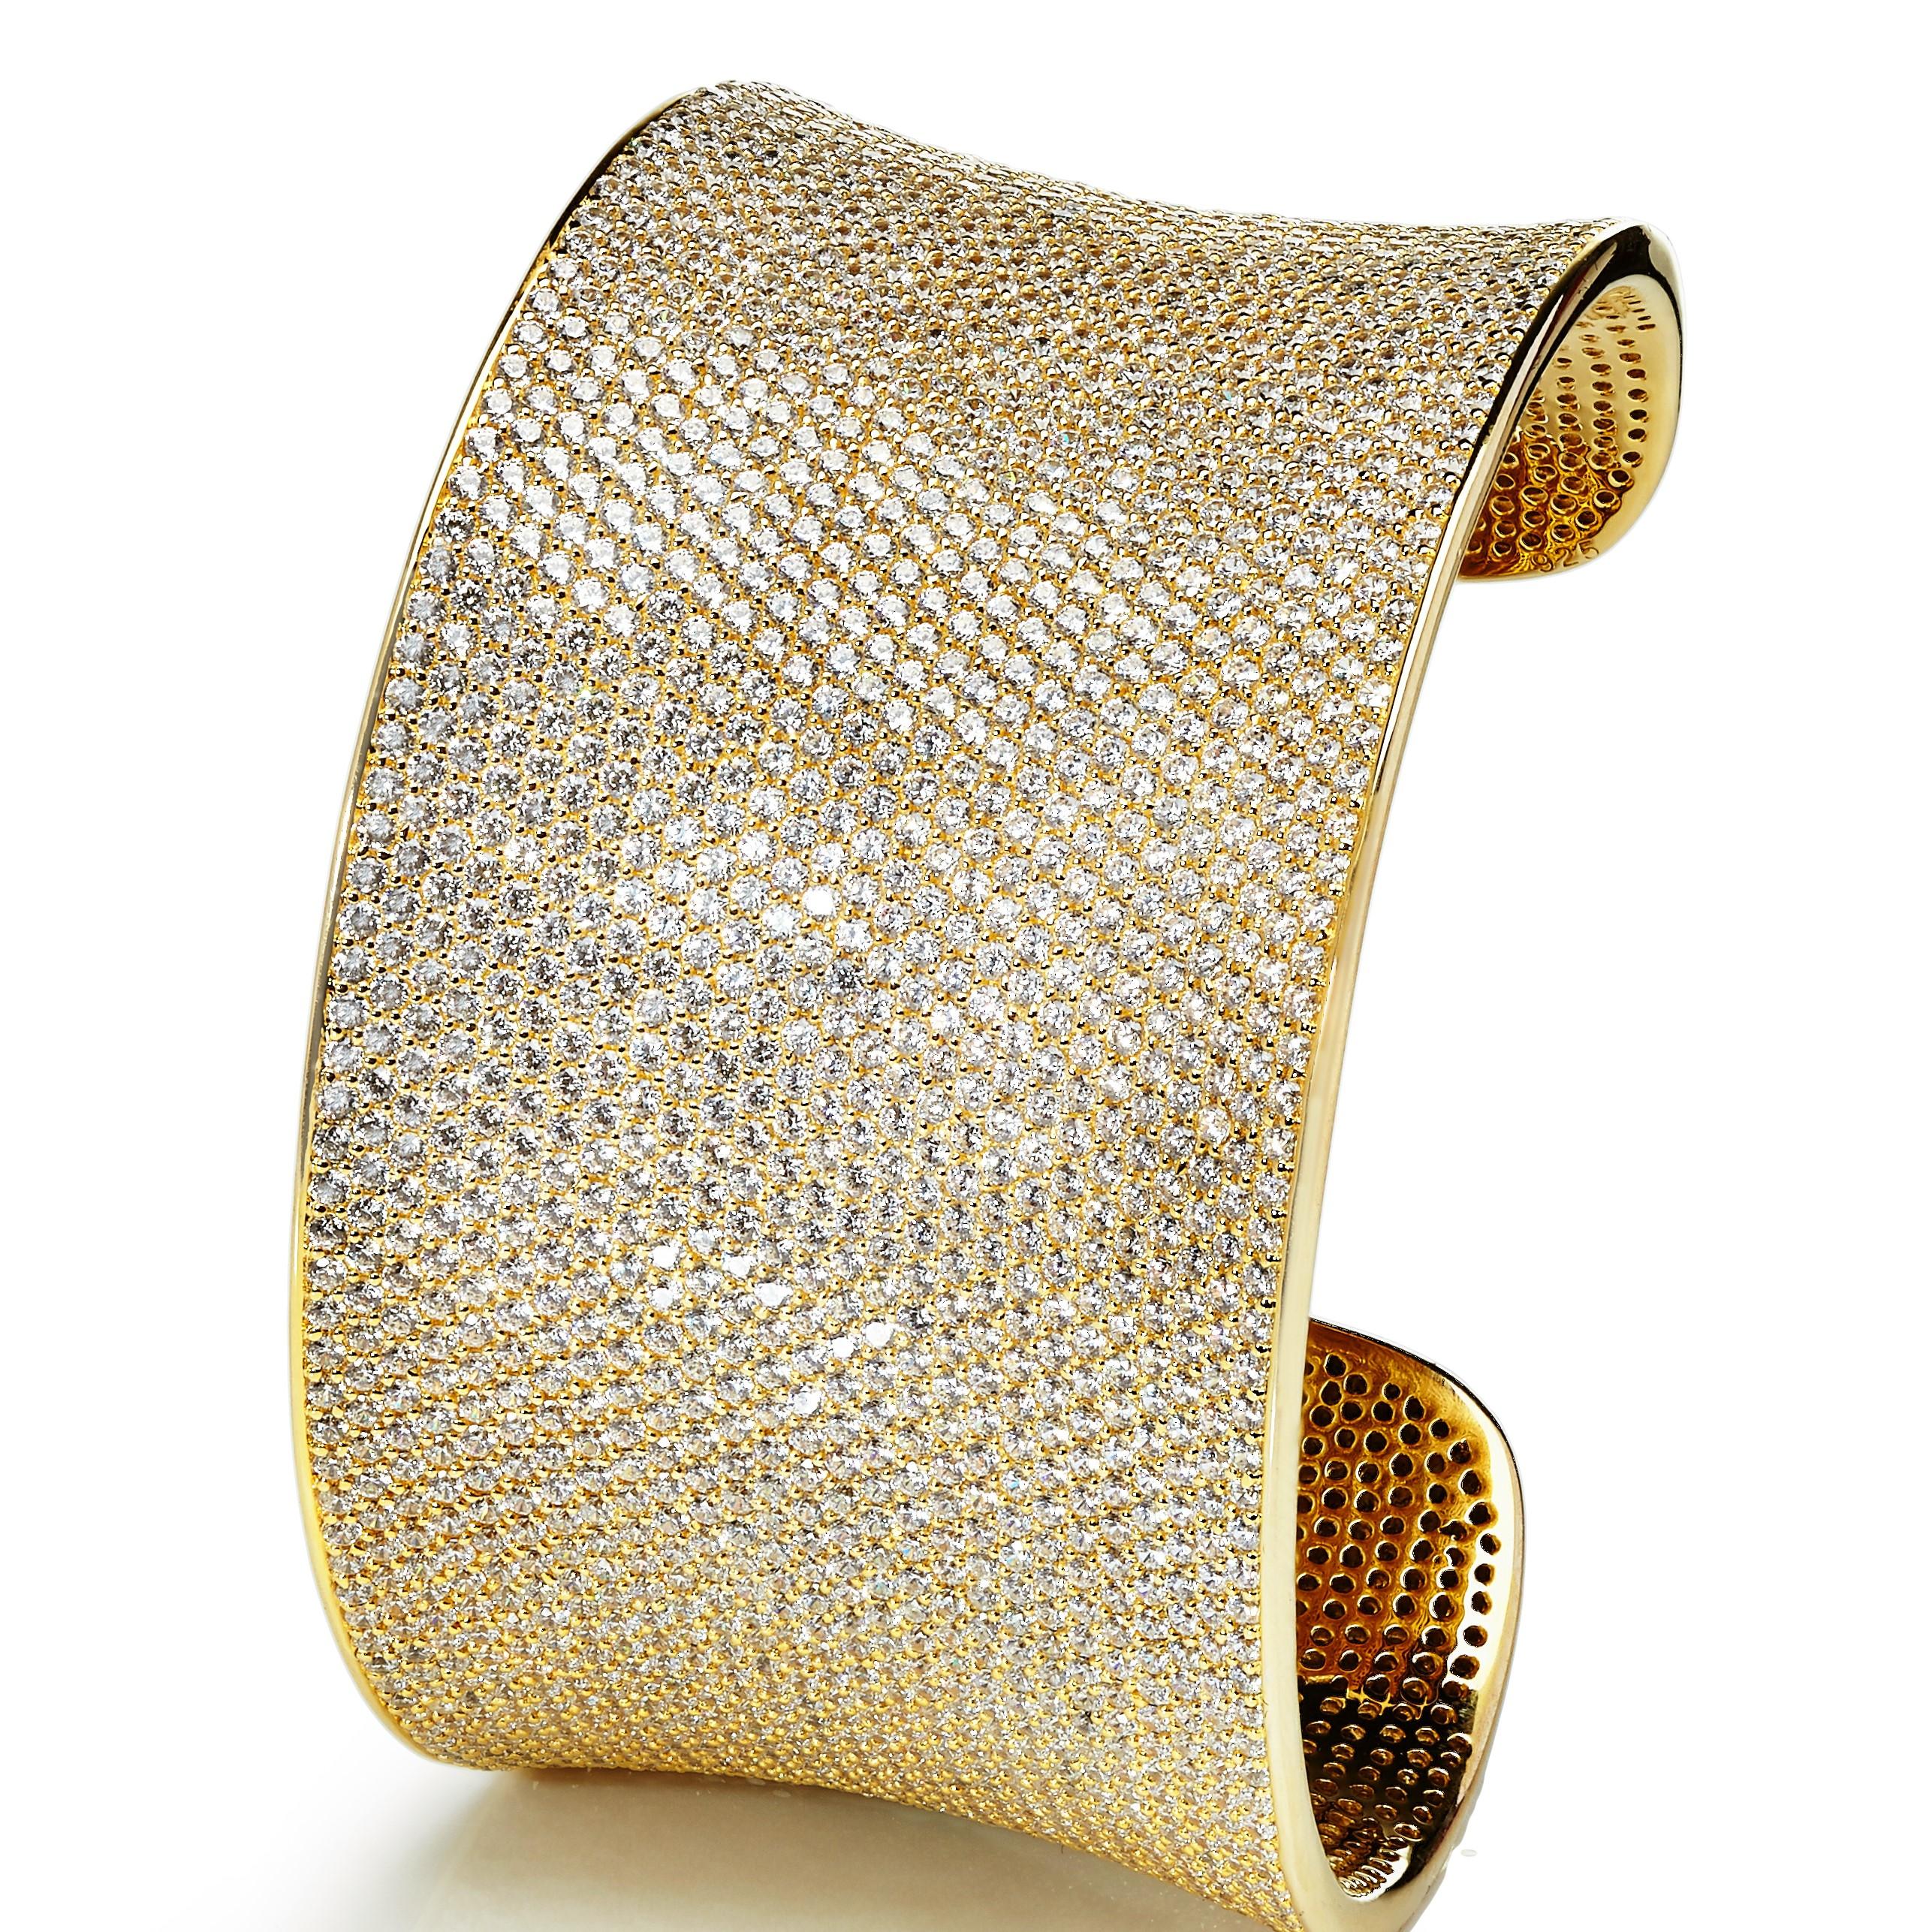 Ce spectaculaire bracelet à manchettes en serti-micro est un véritable coup de cœur.

En tant que pièce emblématique, il représente le style et le caractère unique de la collection.

Incrusté de plus de 2 500 zircons cubiques taillés en brillant de